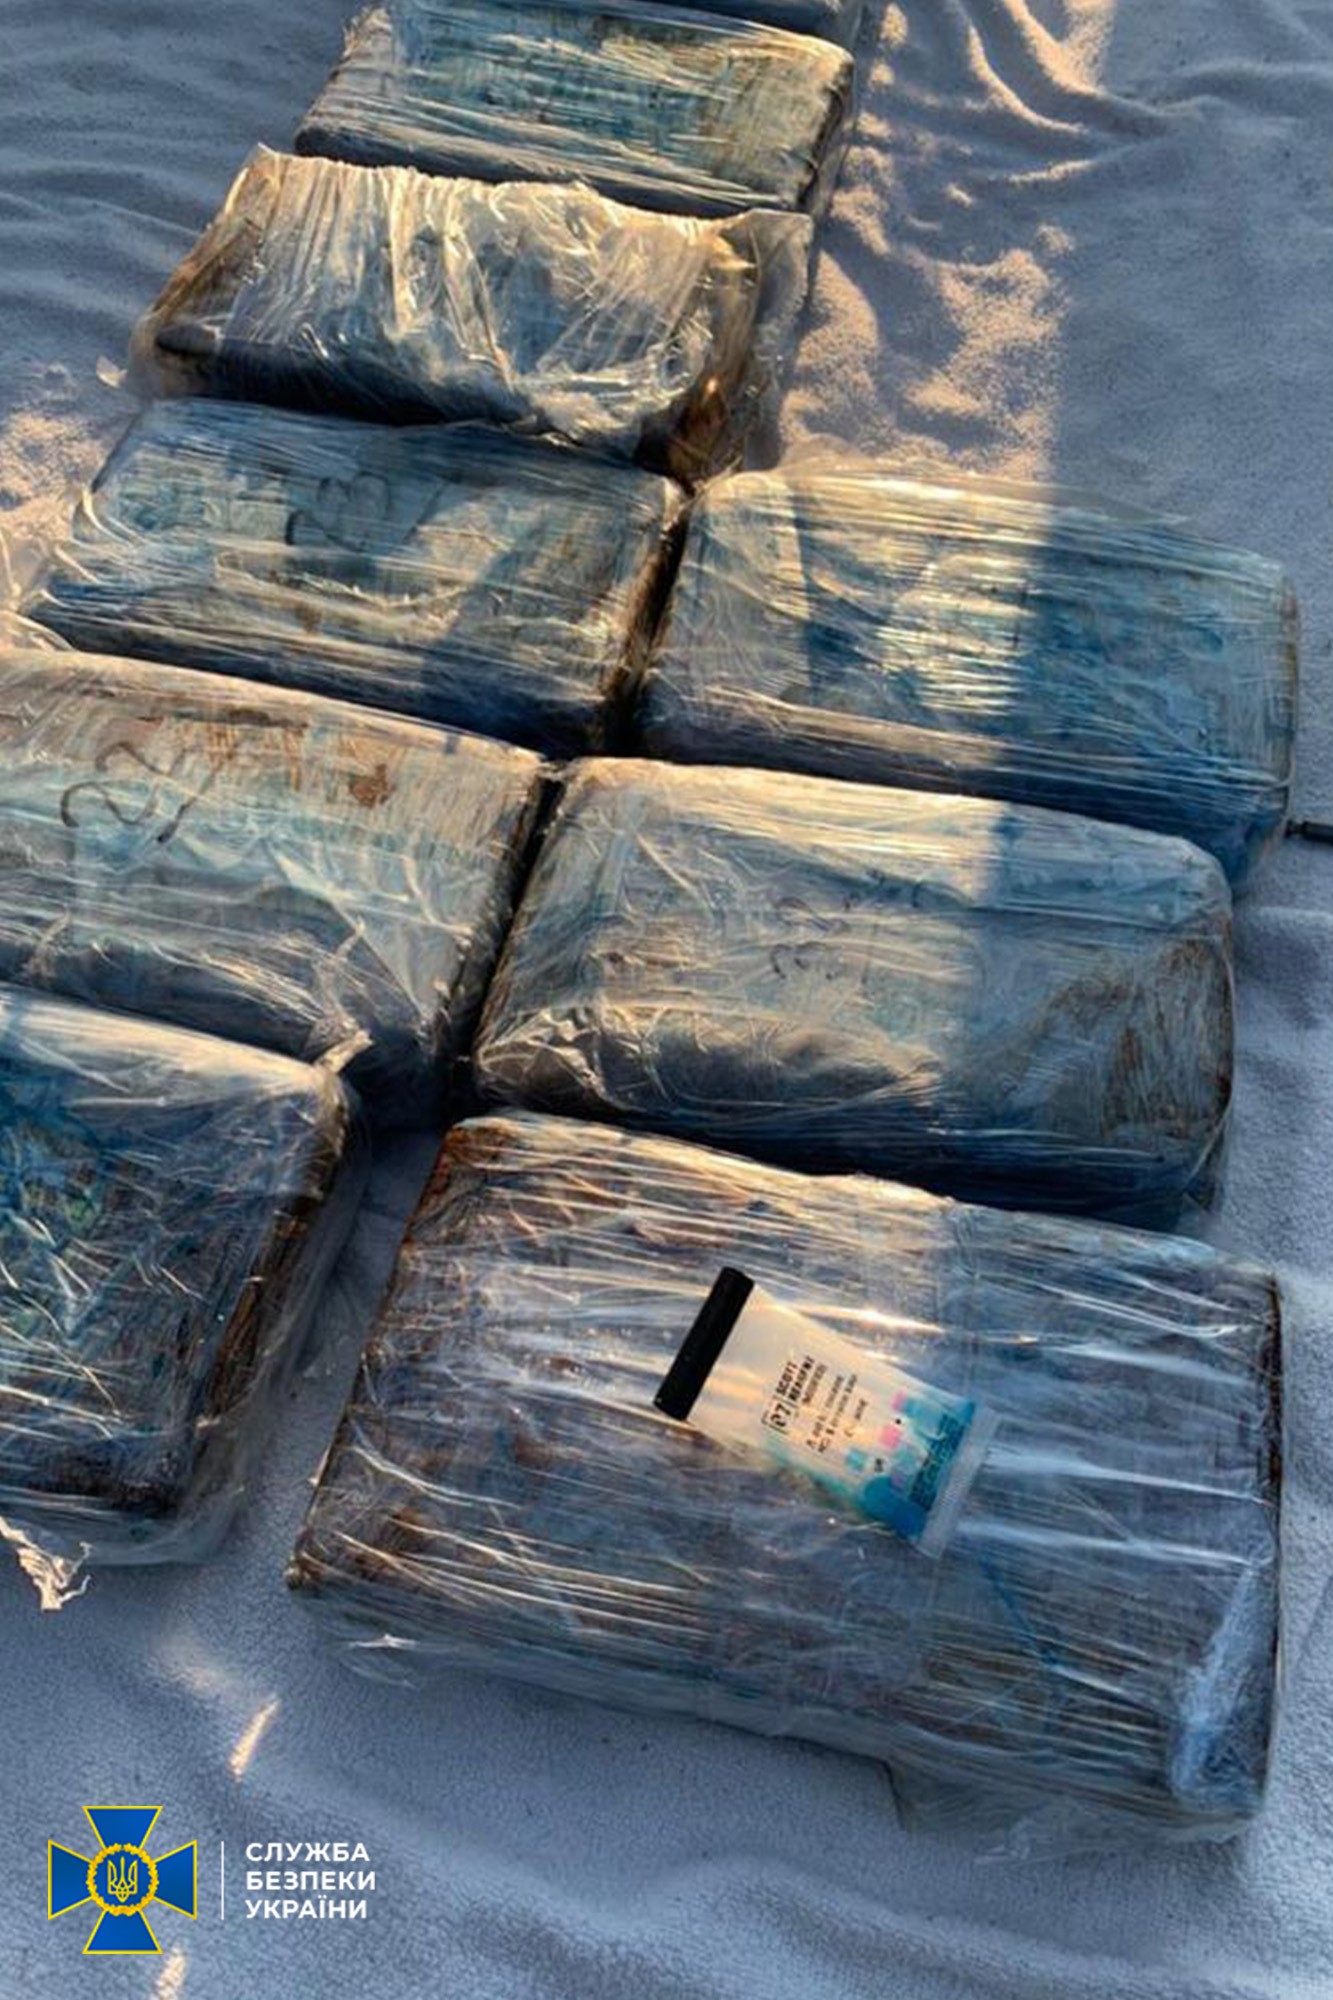 В Одессе задержаны члены всемирной преступной организации «Ндрангета» - из Латинской Америки в Евросоюз переправляли кокаин через Украину